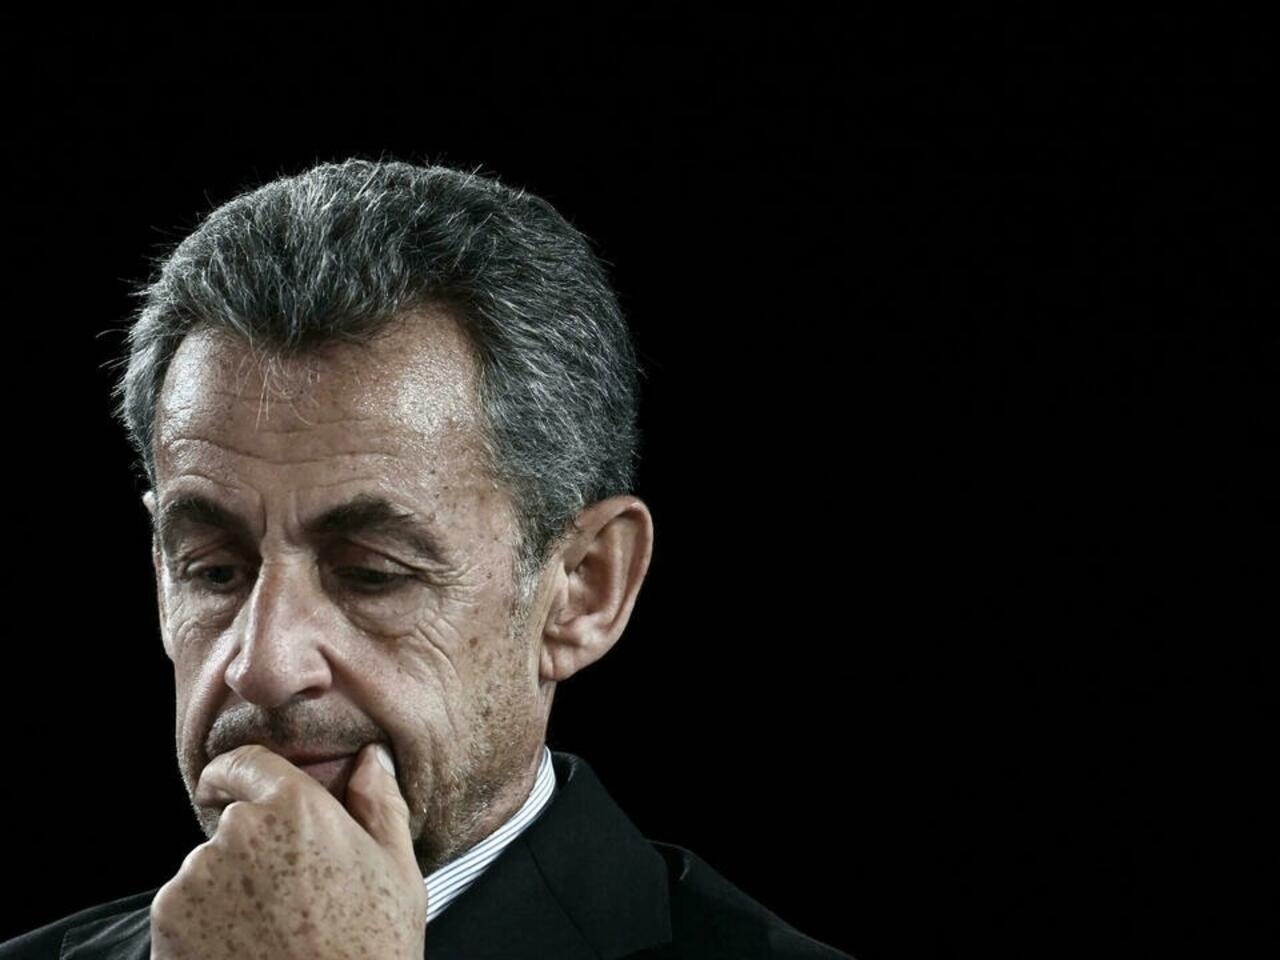 Rétractation de Takieddine: Nicolas Sarkozy, mis en examen pour "association de malfaiteurs..."